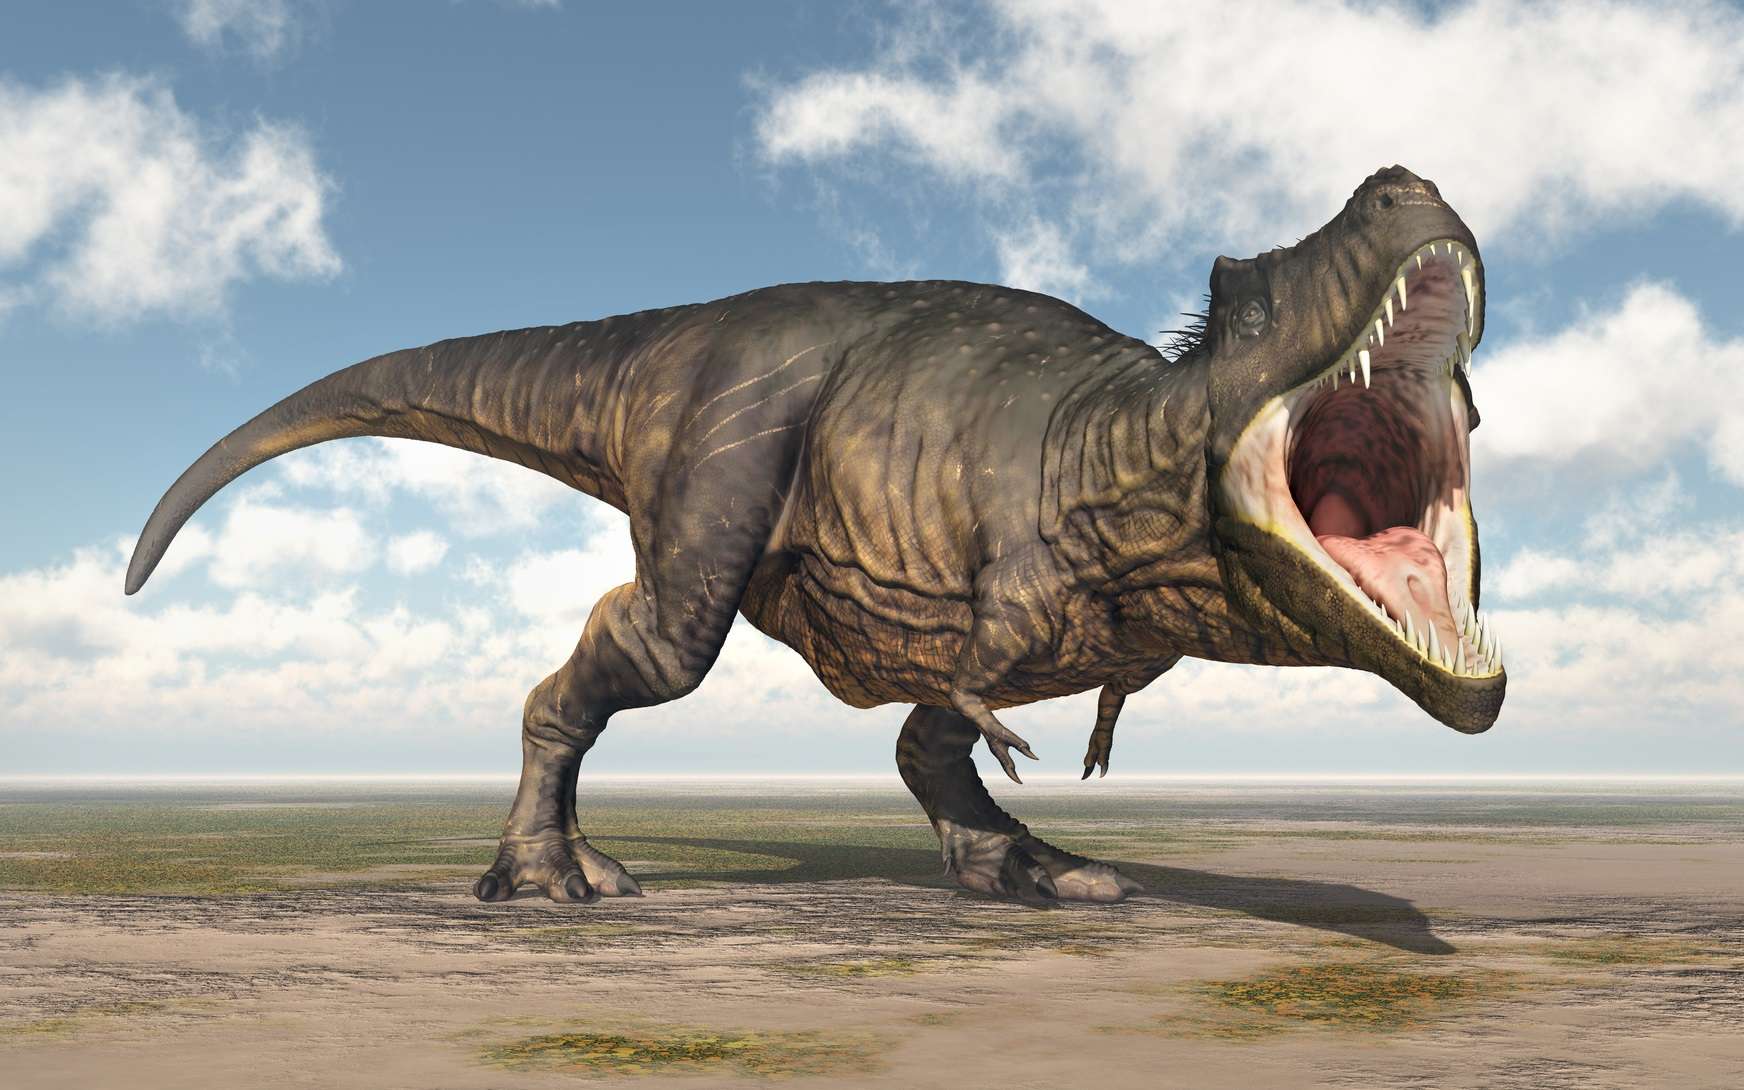 https://www.futura-sciences.com/planete/actualites/paleontologie-t-rex-ne-pouvait-pas-tirer-langue-71704/